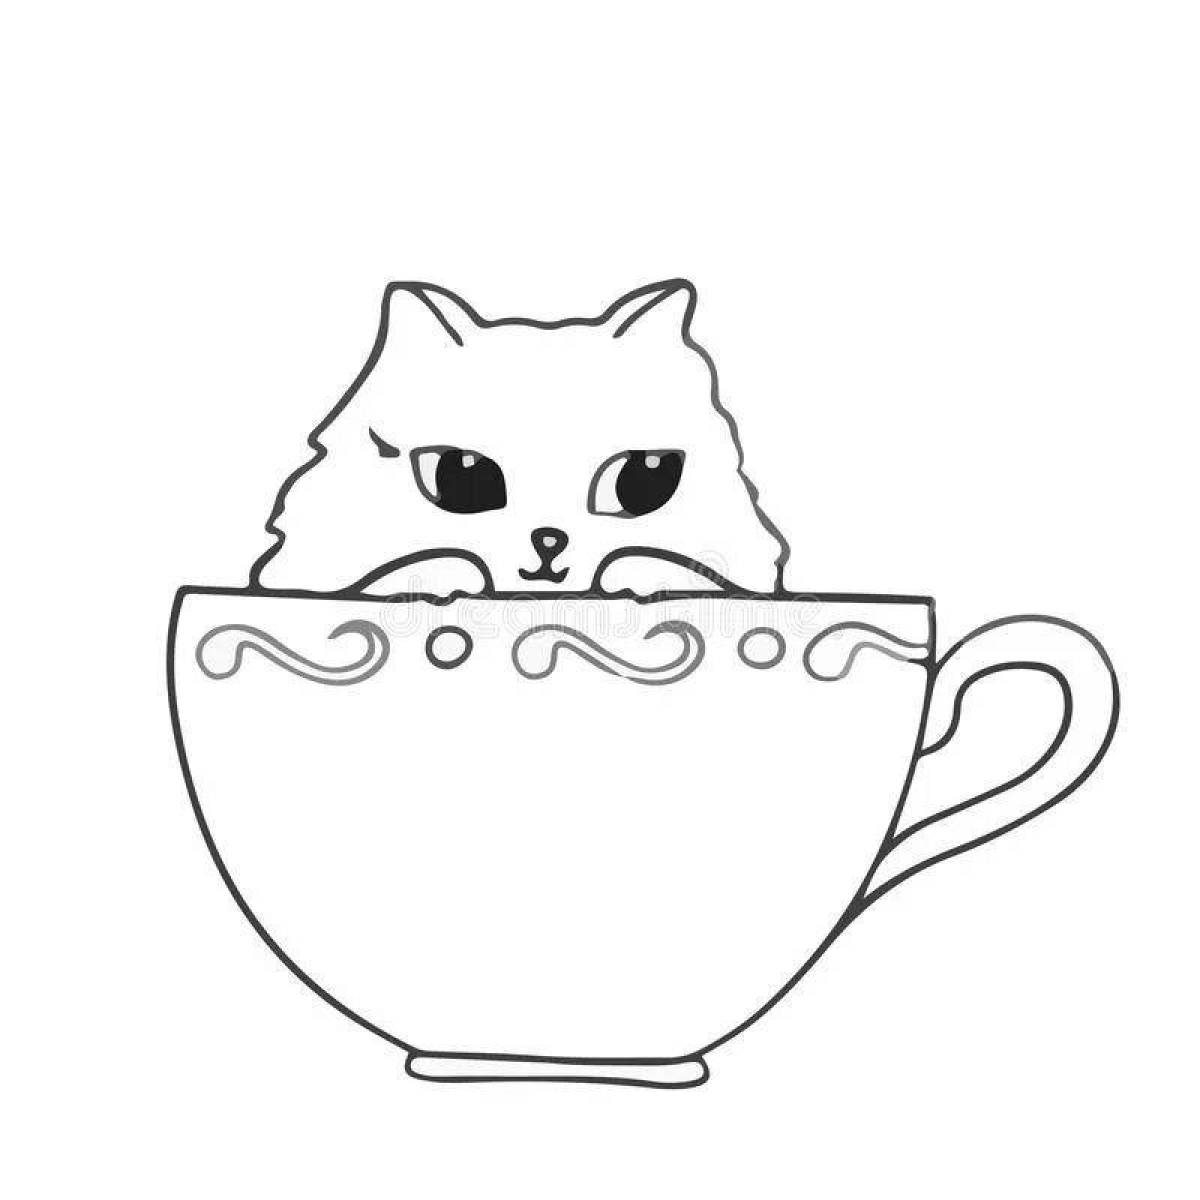 Fancy cat in a mug coloring book